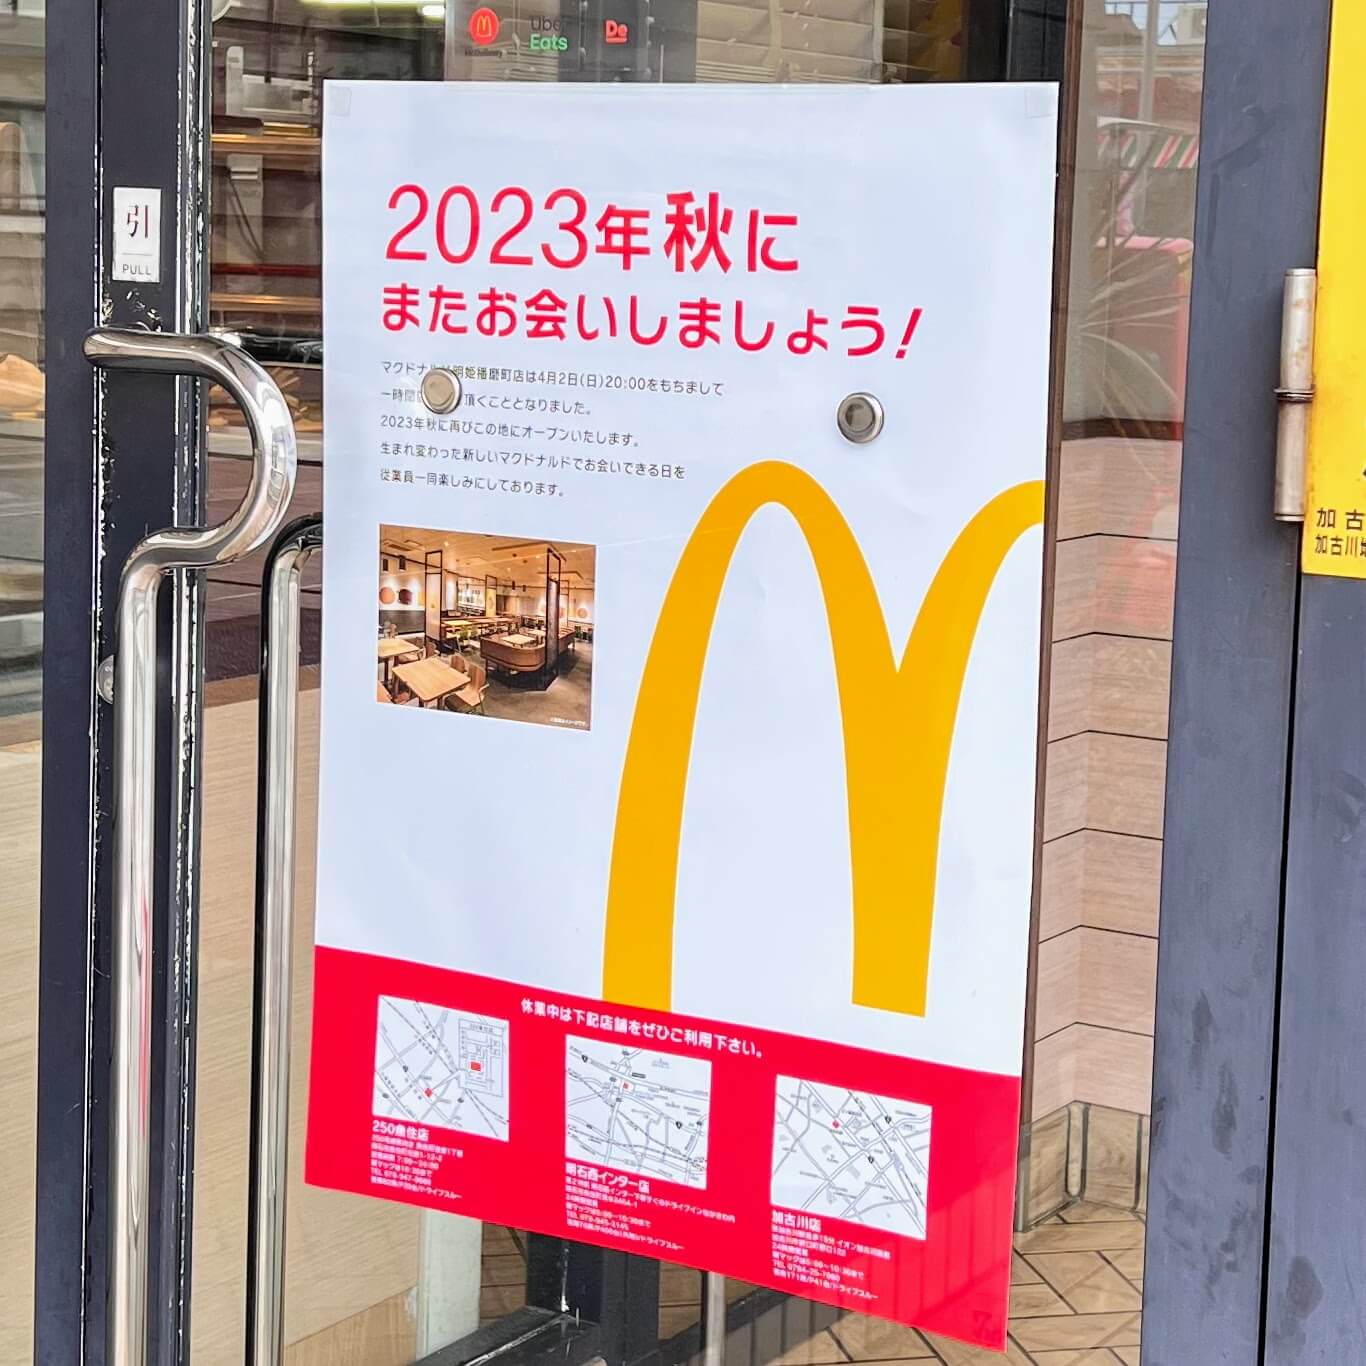 マクドナルド明姫播磨町店の一時閉店のお知らせ